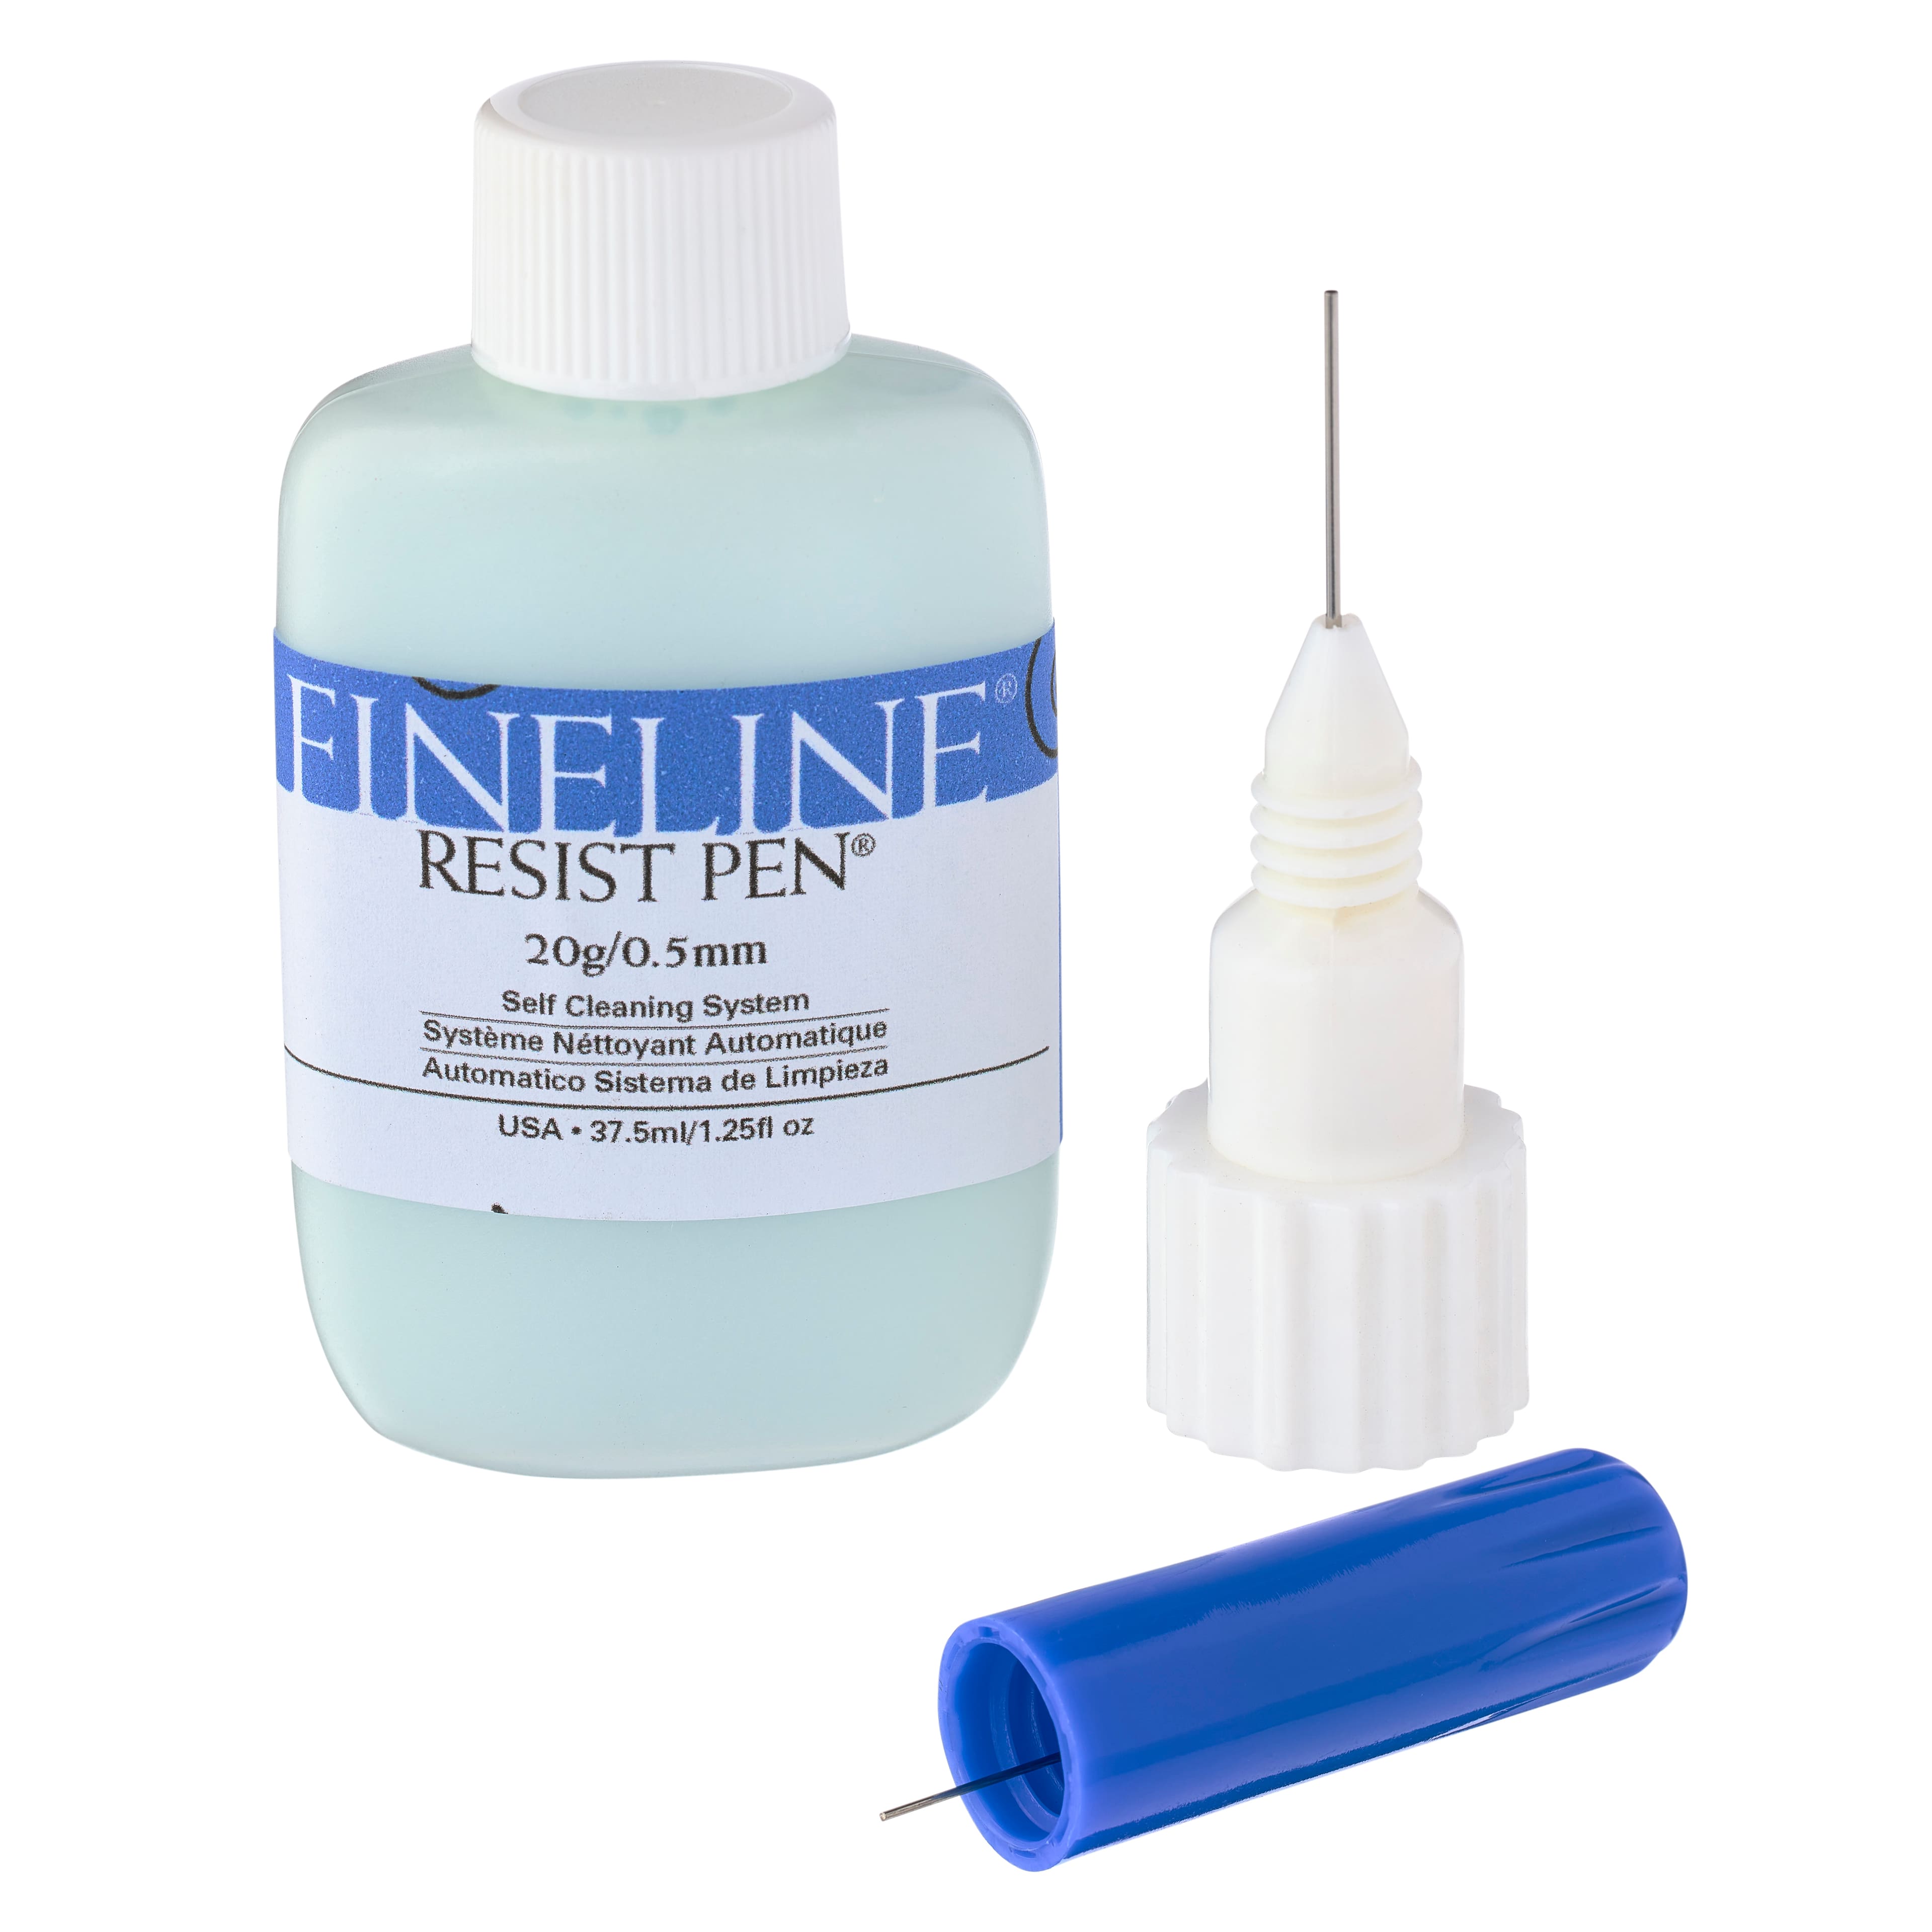 Fineline® Resist Pen